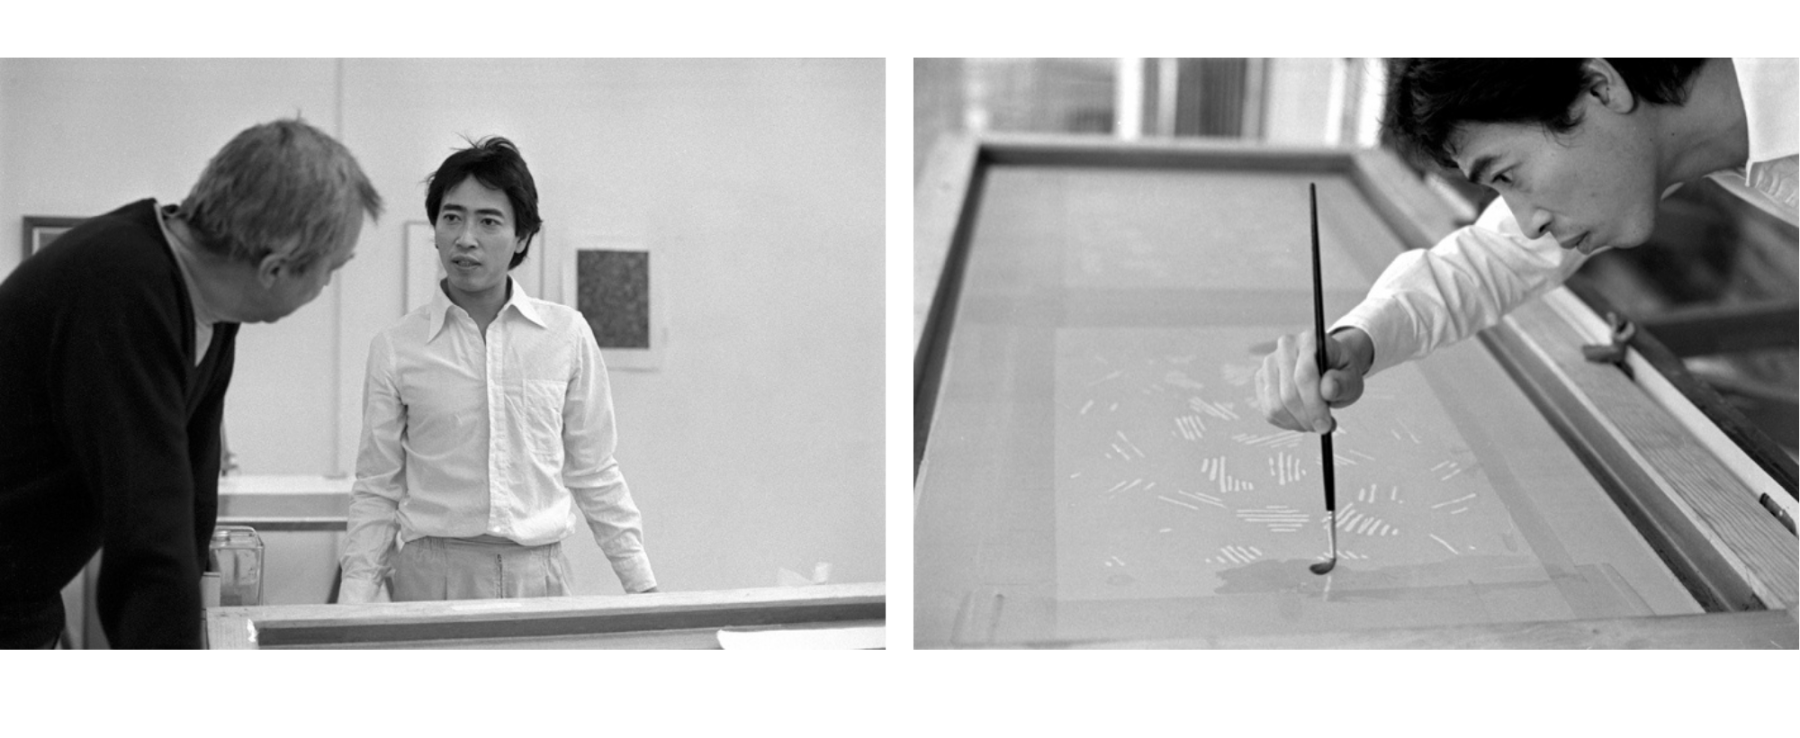 Jasper Johns with Hiroshi Kawanishi February 8, 1980

Photographs &copy; Katy Martin 2022